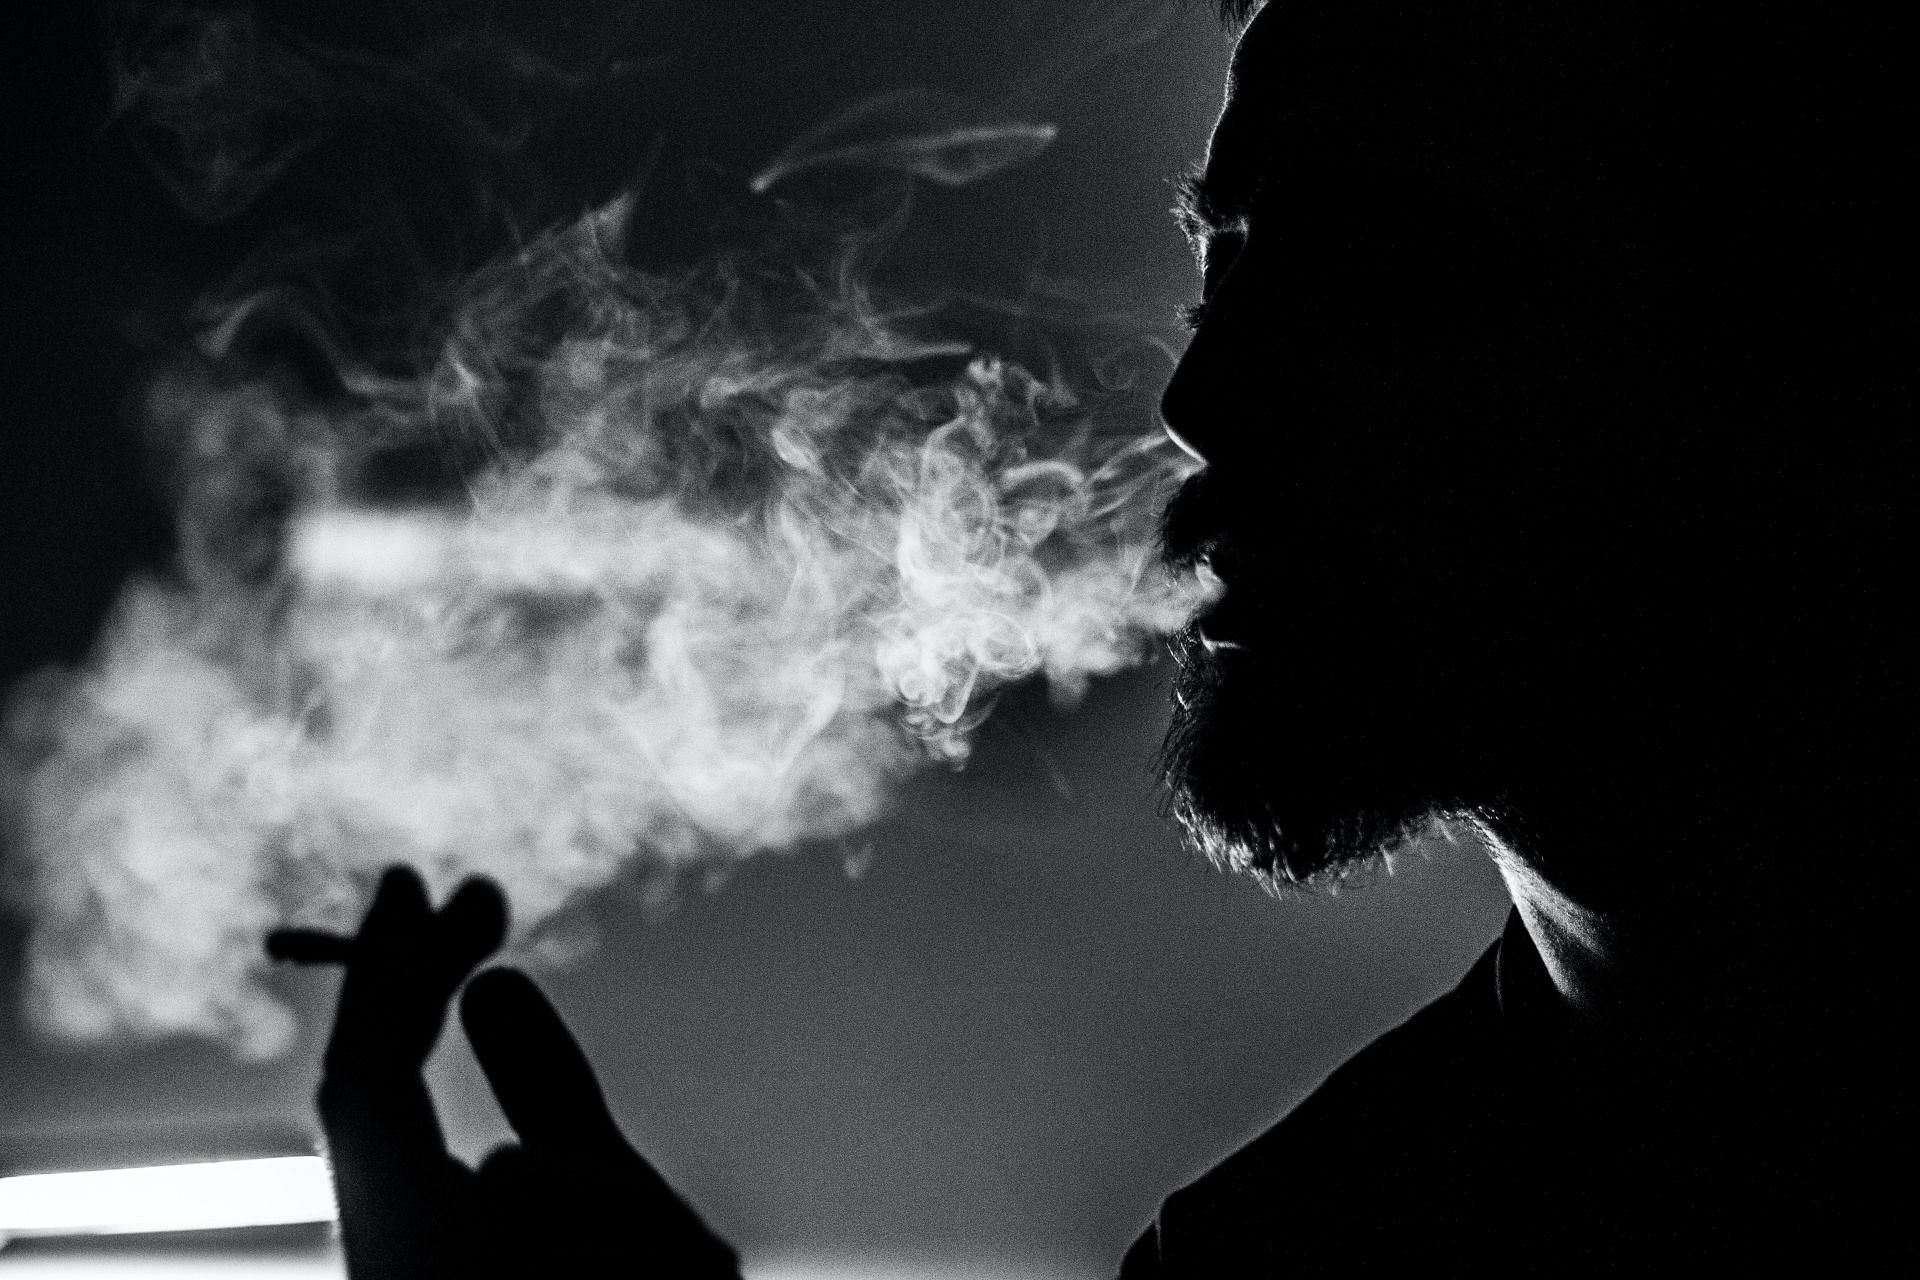 Smoking can also cause lung cancer. (Image via Pexels/ Petar Starčević)